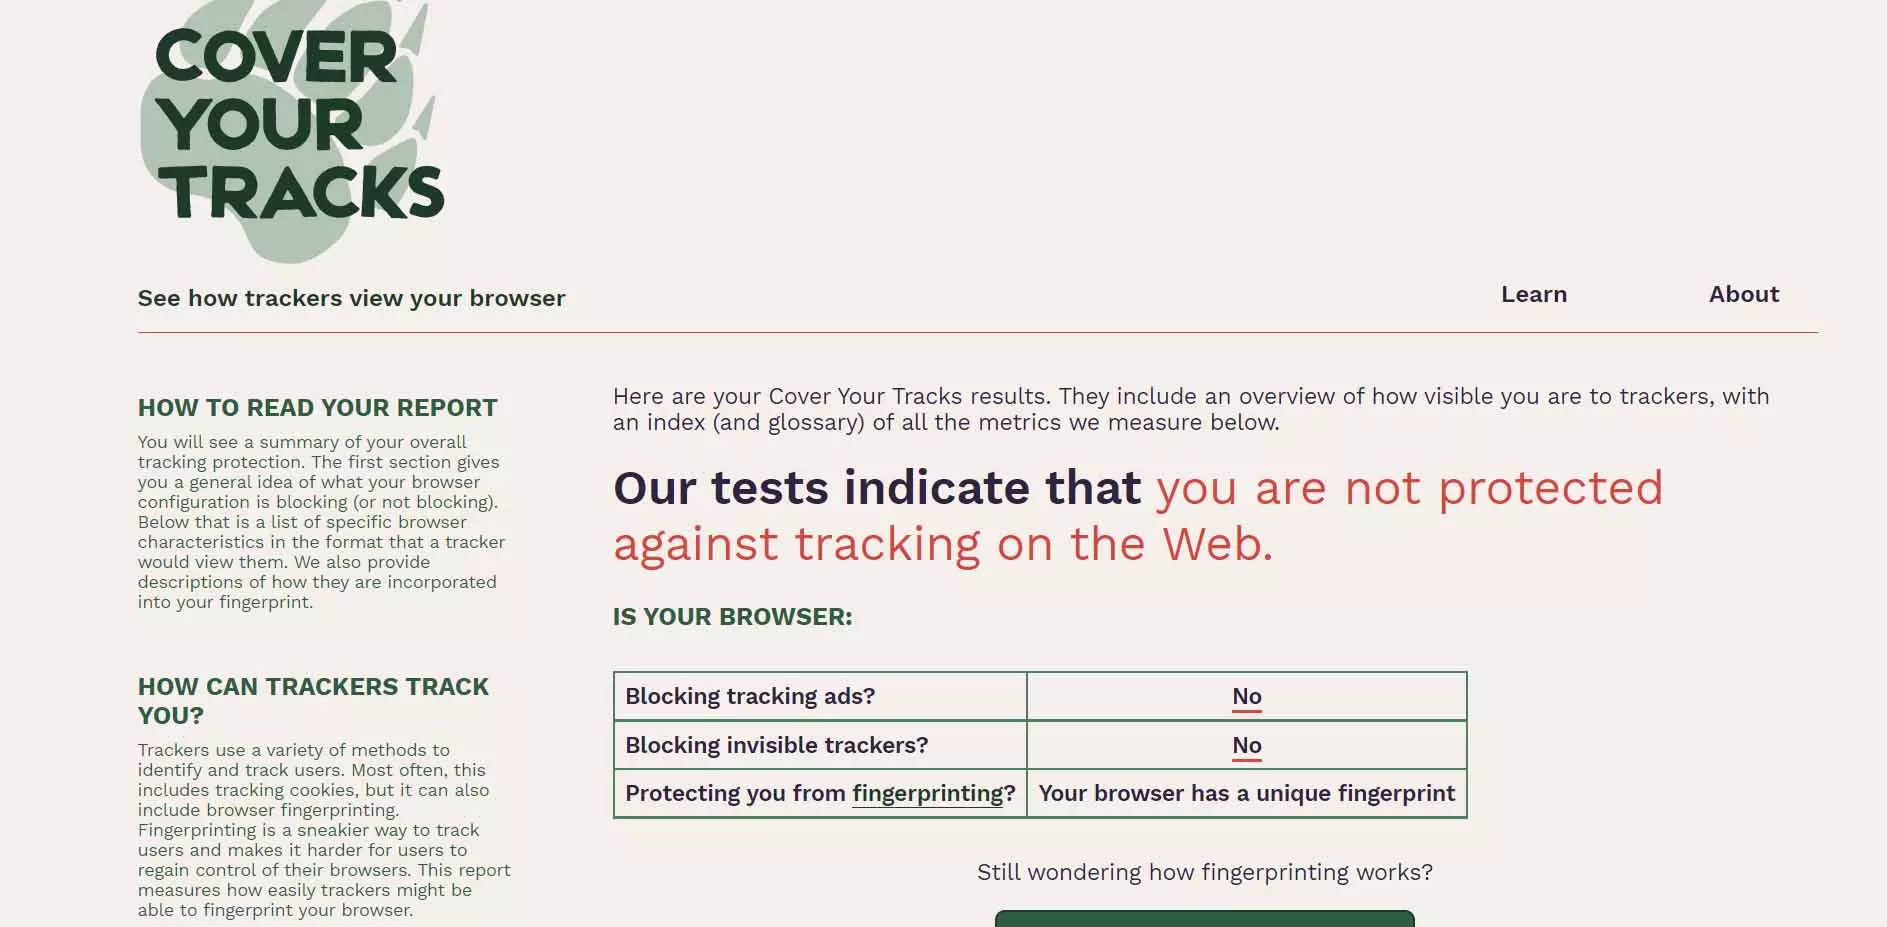 Prueba este test para saber si tu navegador te espía Redes Zone : Portal sobre telecomunicaciones y redes